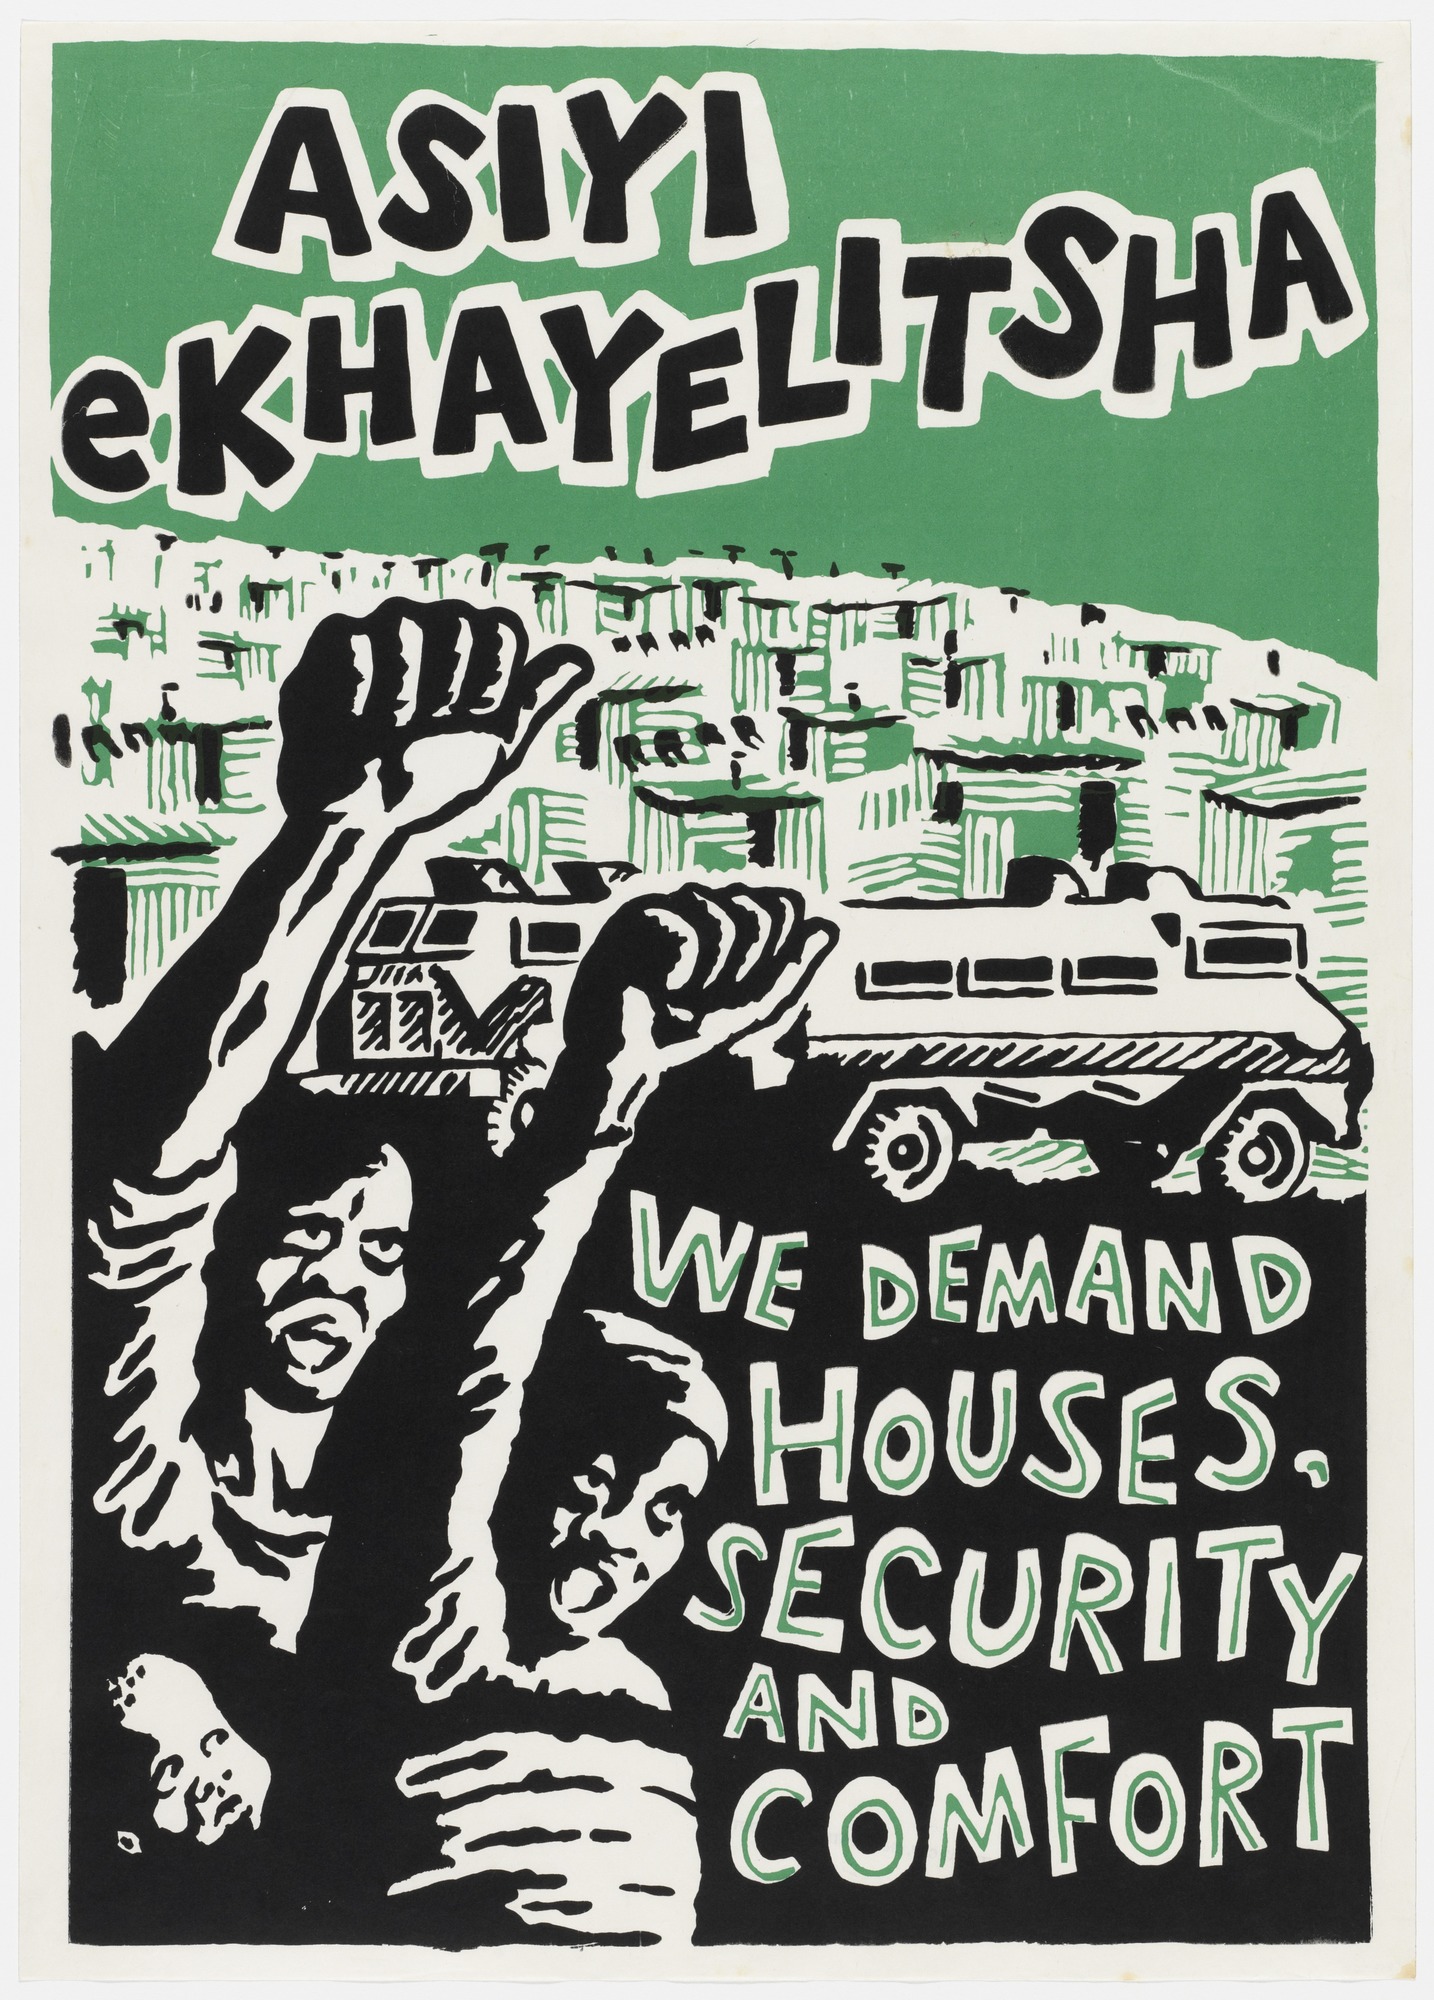 United Democratic Front (UDF), South Africa Asiyi ekhyalitsha ( We are not going to Kahayelitsha ) 1983